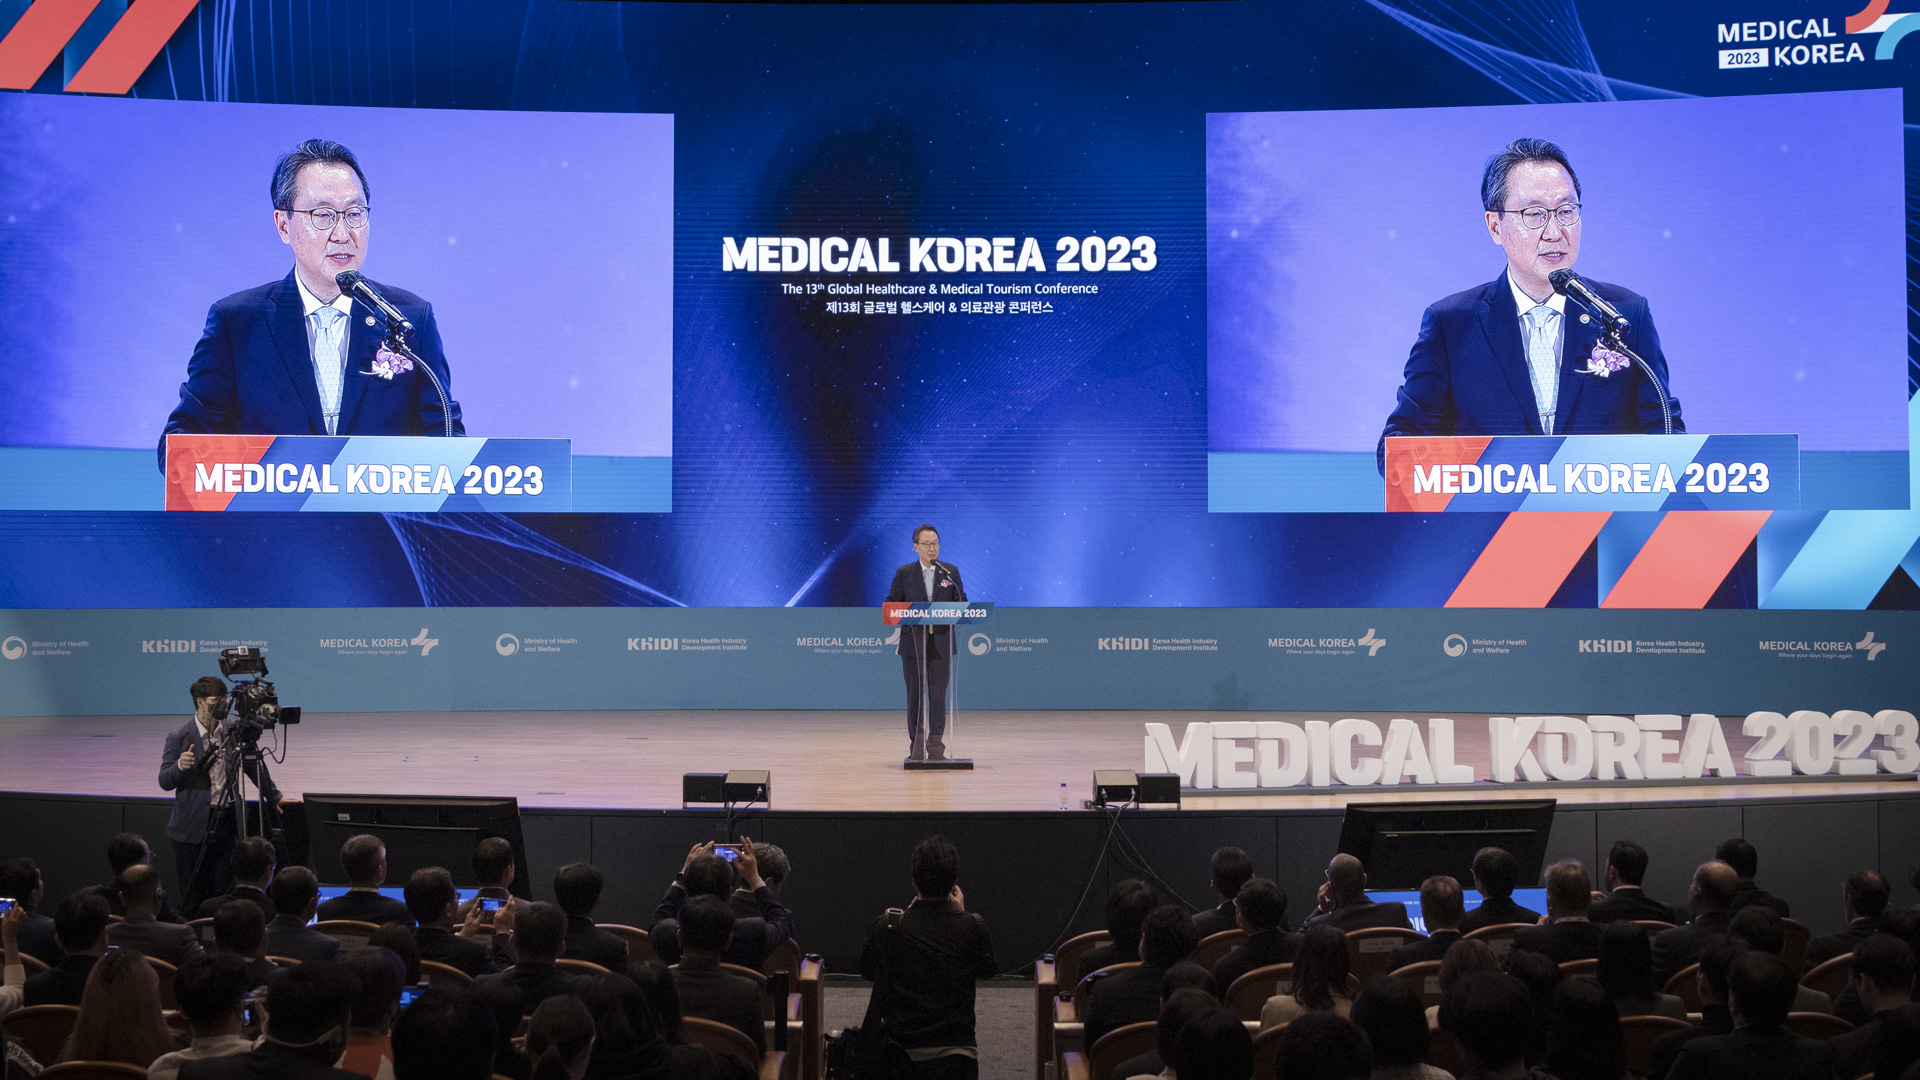 ‘더 나은 일상, 더 나은 미래를 위한 여정’ 「메디컬 코리아(Medical Korea) 2023」 사진15